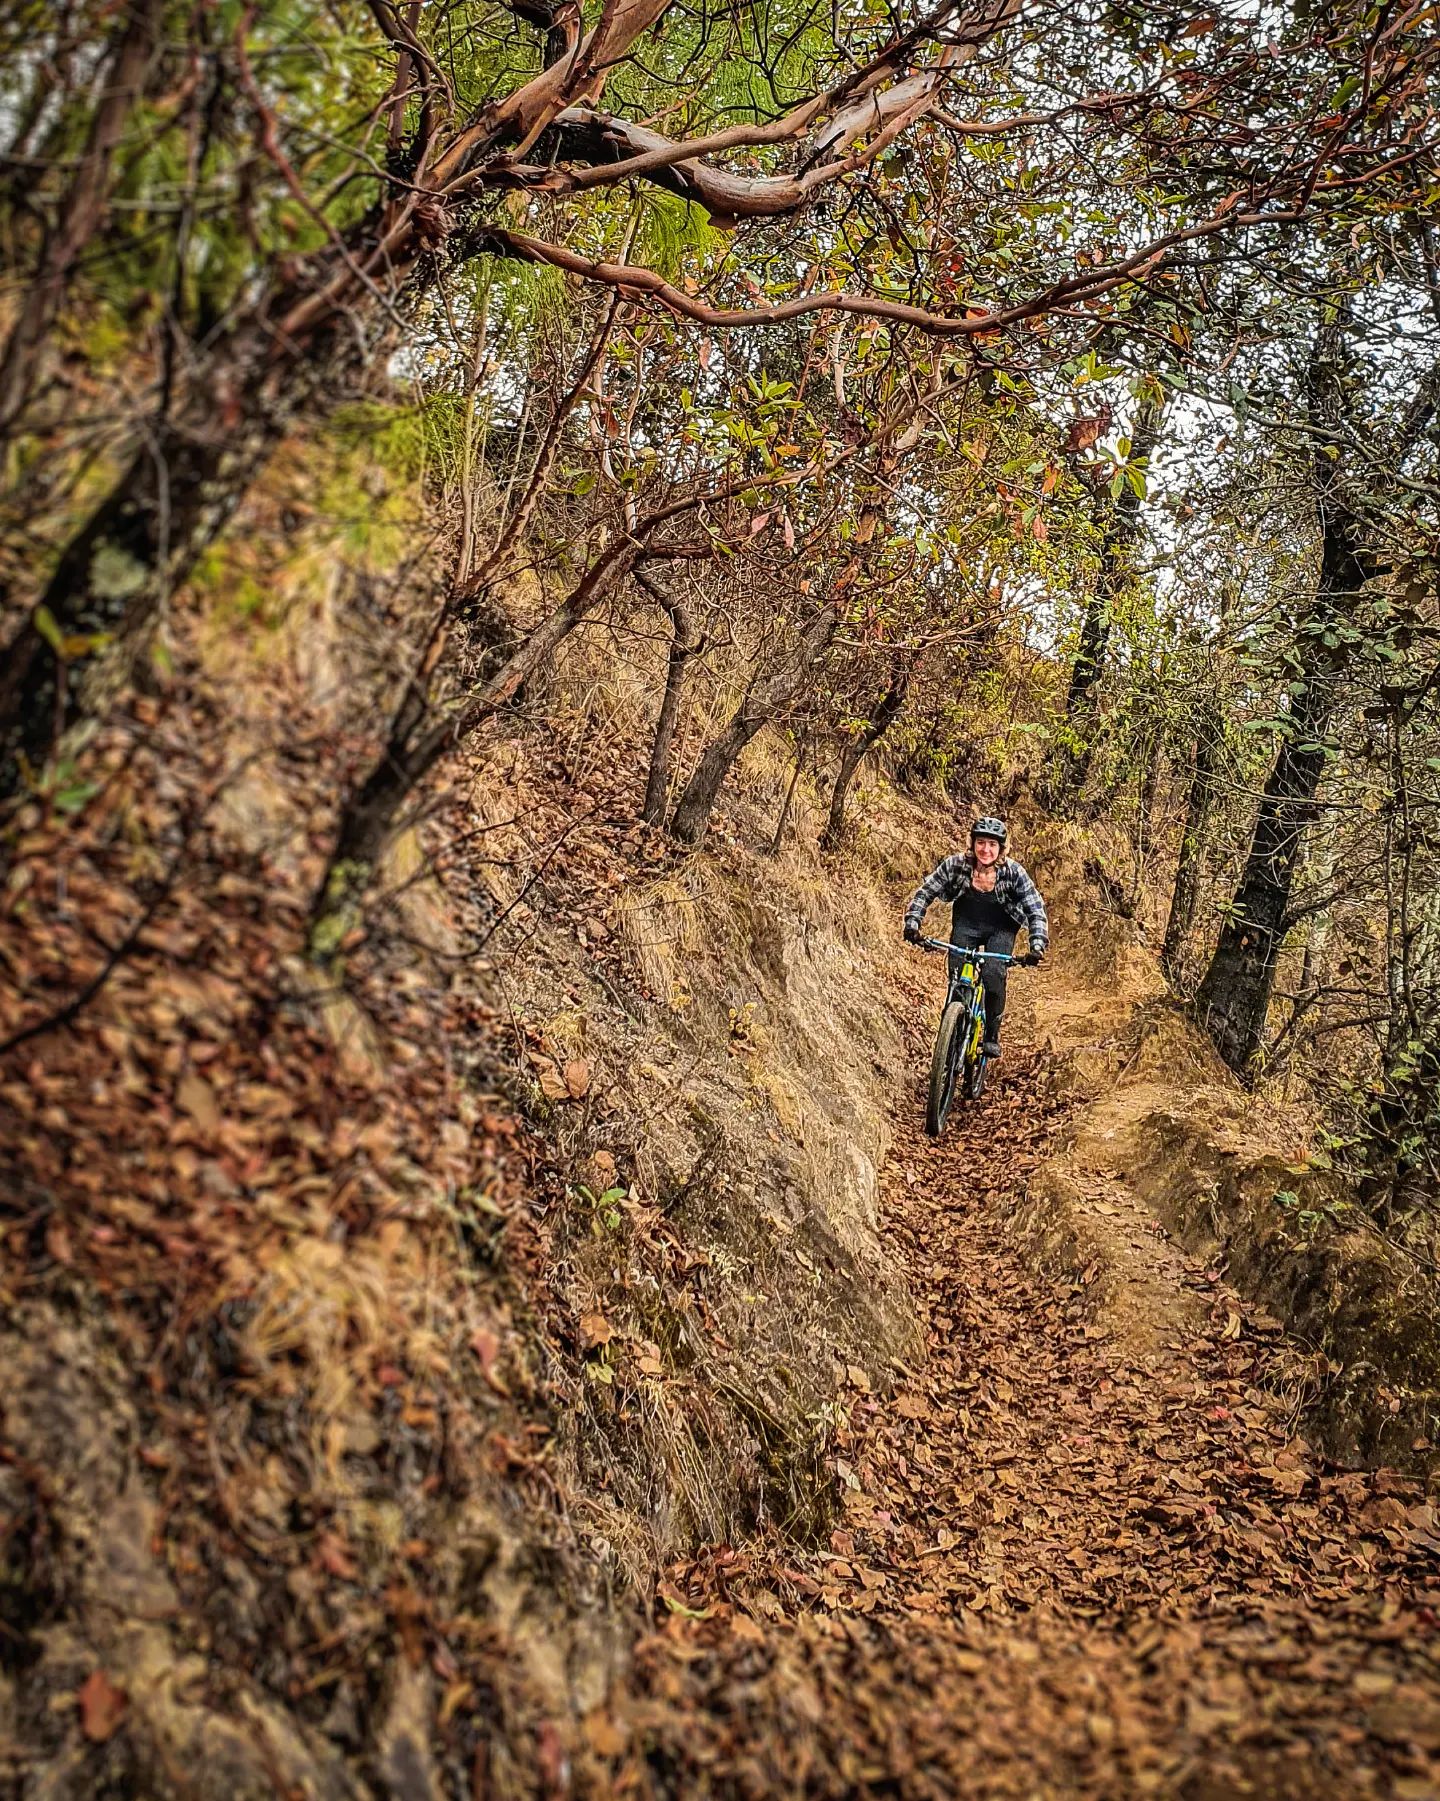 Explorando nuevas rutas, conociendo nuevos lugares! 
Desde lo alto del Cerro Tecpán hasta la profundidad en los cañones, la diversidad de Guatemlaa es increíble 🇬🇹

Próximamente estaremos anunciando las nuevas fechas!

#Guatemala #mtbtours #mtbguatemala #enduro #exploraguate #mtbtravel #mountainbikeguatemala #tecpan #biketravel #bikelife #adventuremtb #biketour #mtbguide #freedomontwowheels #naturaleza #visitguatemala